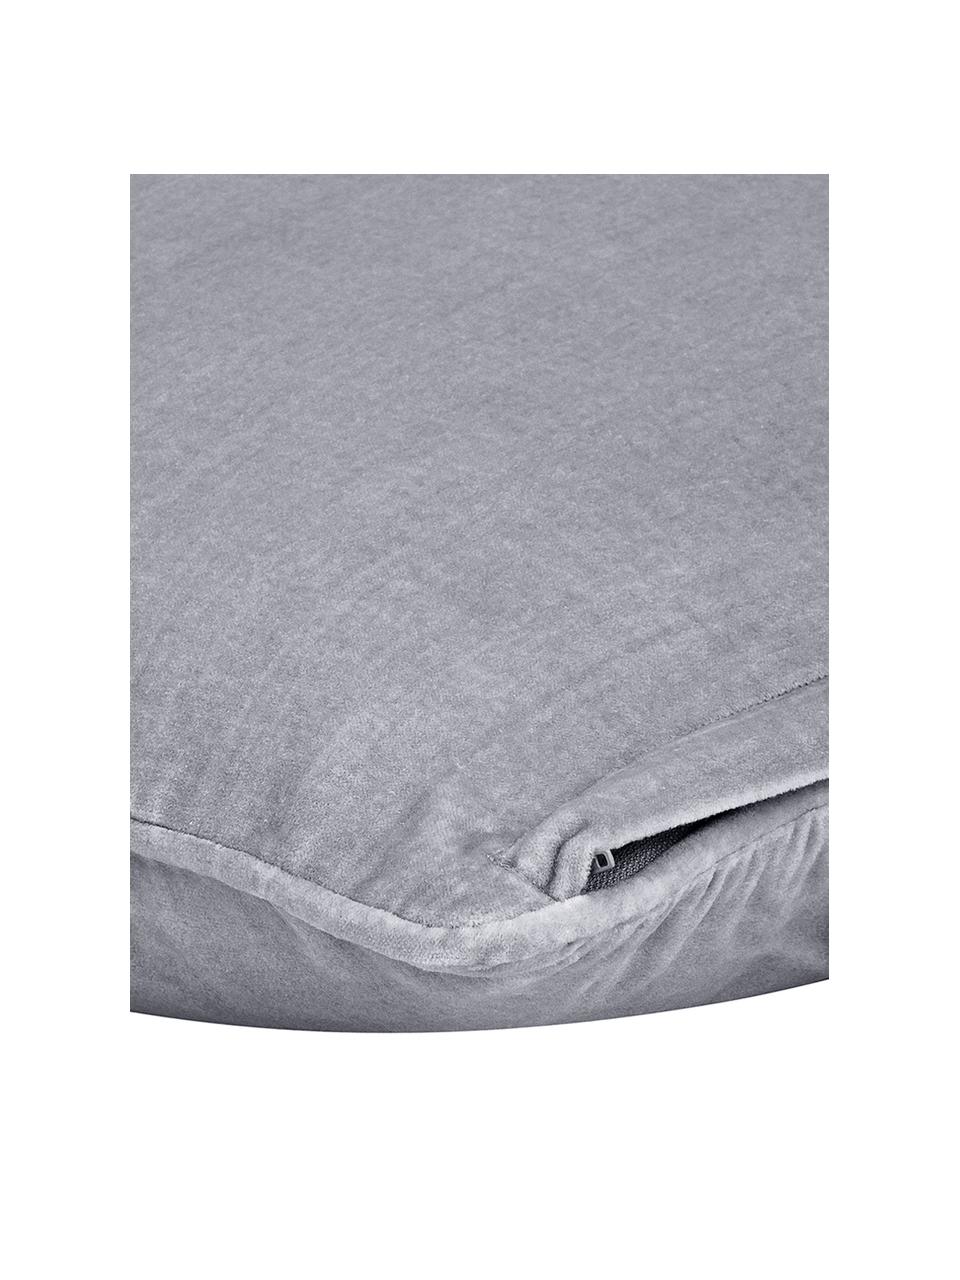 Einfarbige Samt-Kissenhülle Dana in Grau, 100% Baumwollsamt, Grau, B 30 x L 50 cm